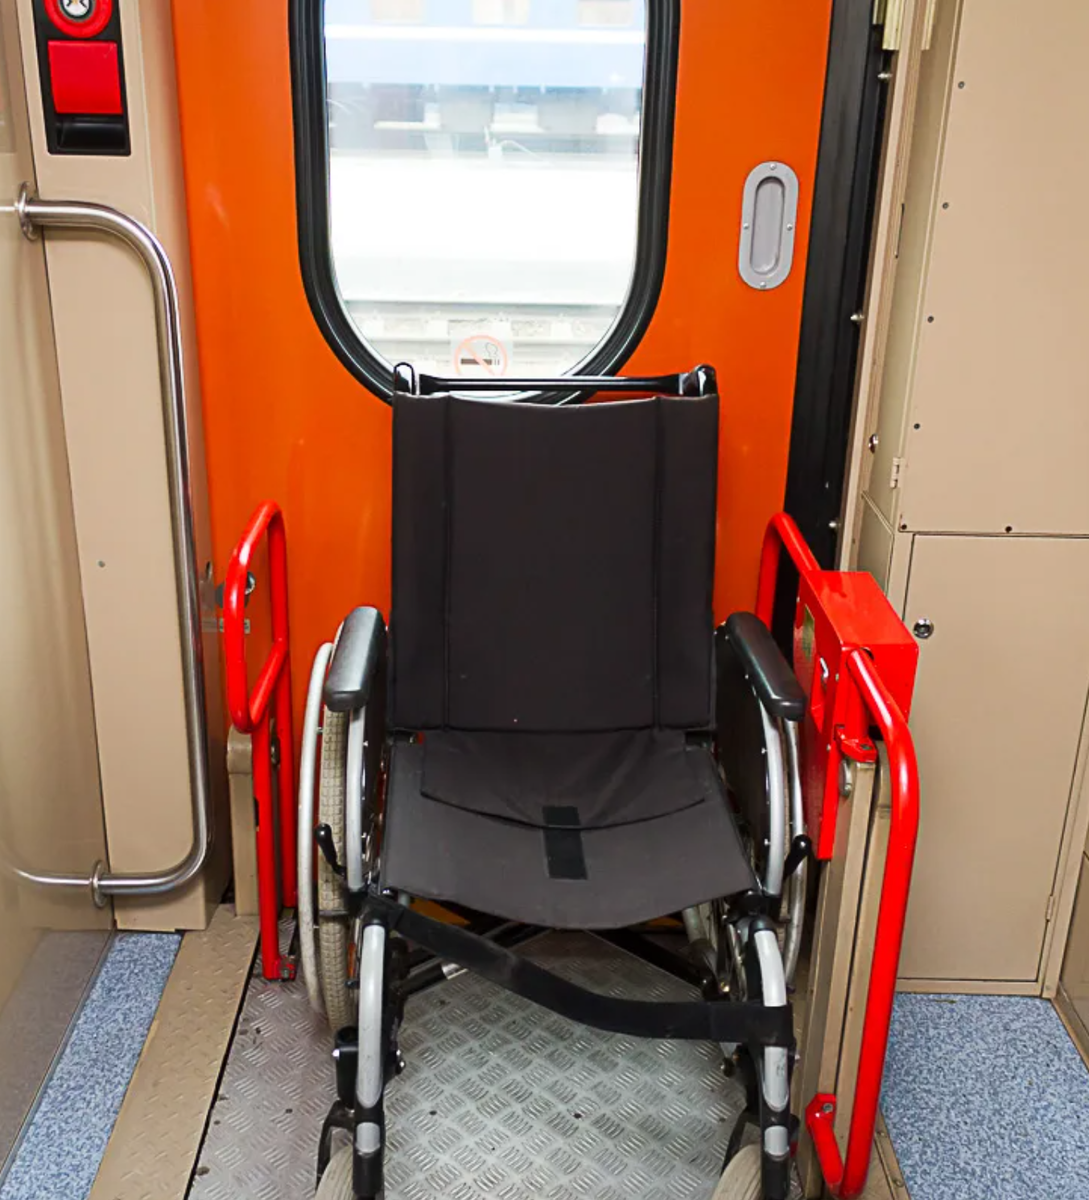 Вагон для инвалидов в поезде. Спец вагоны РЖД для инвалидов. Купе 2у (для инвалидов) ФПК. Вагоны для инвалидов в поездах РЖД. Купе для инвалидов РЖД.